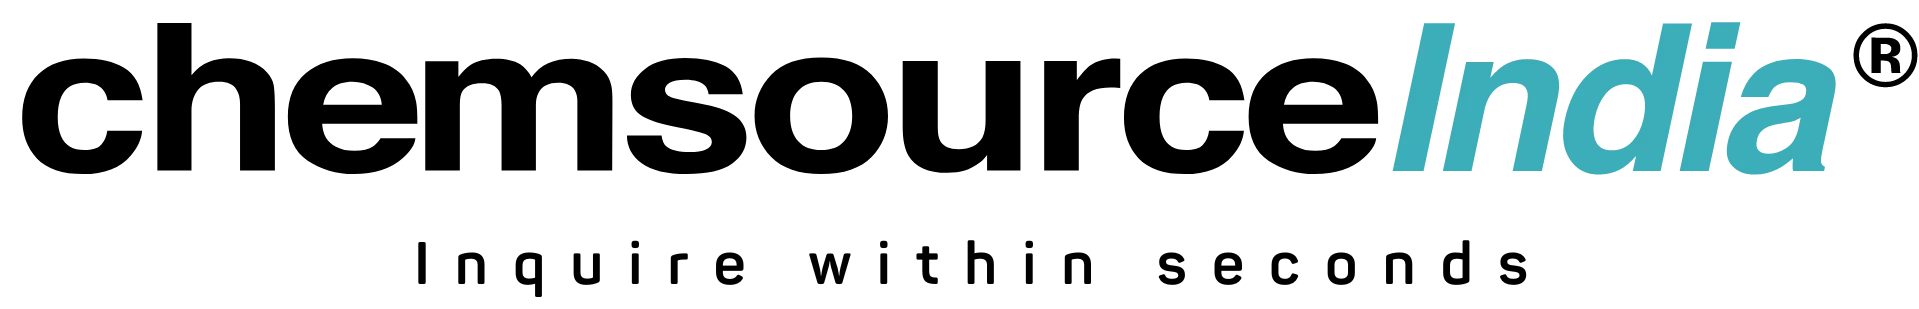 choemsource india logo